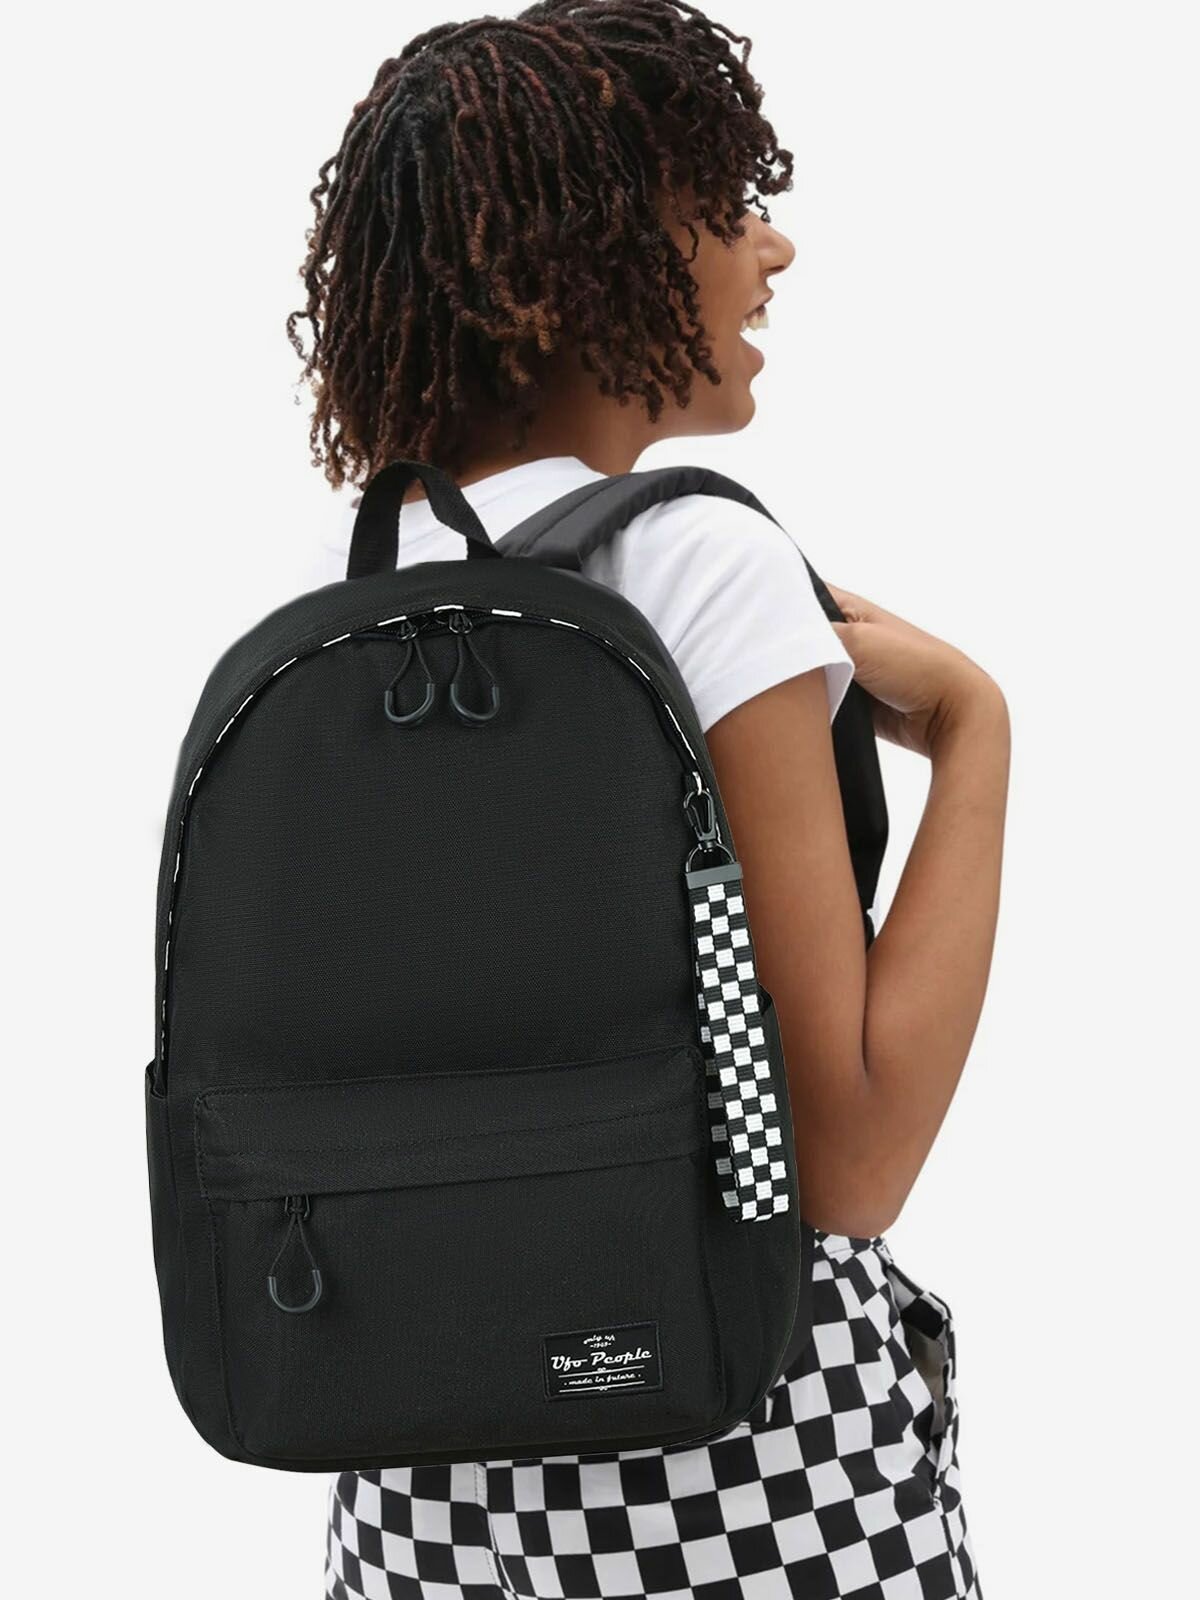 Рюкзак школьный для девочки подростка, Детский рюкзак в школу старшие классы.